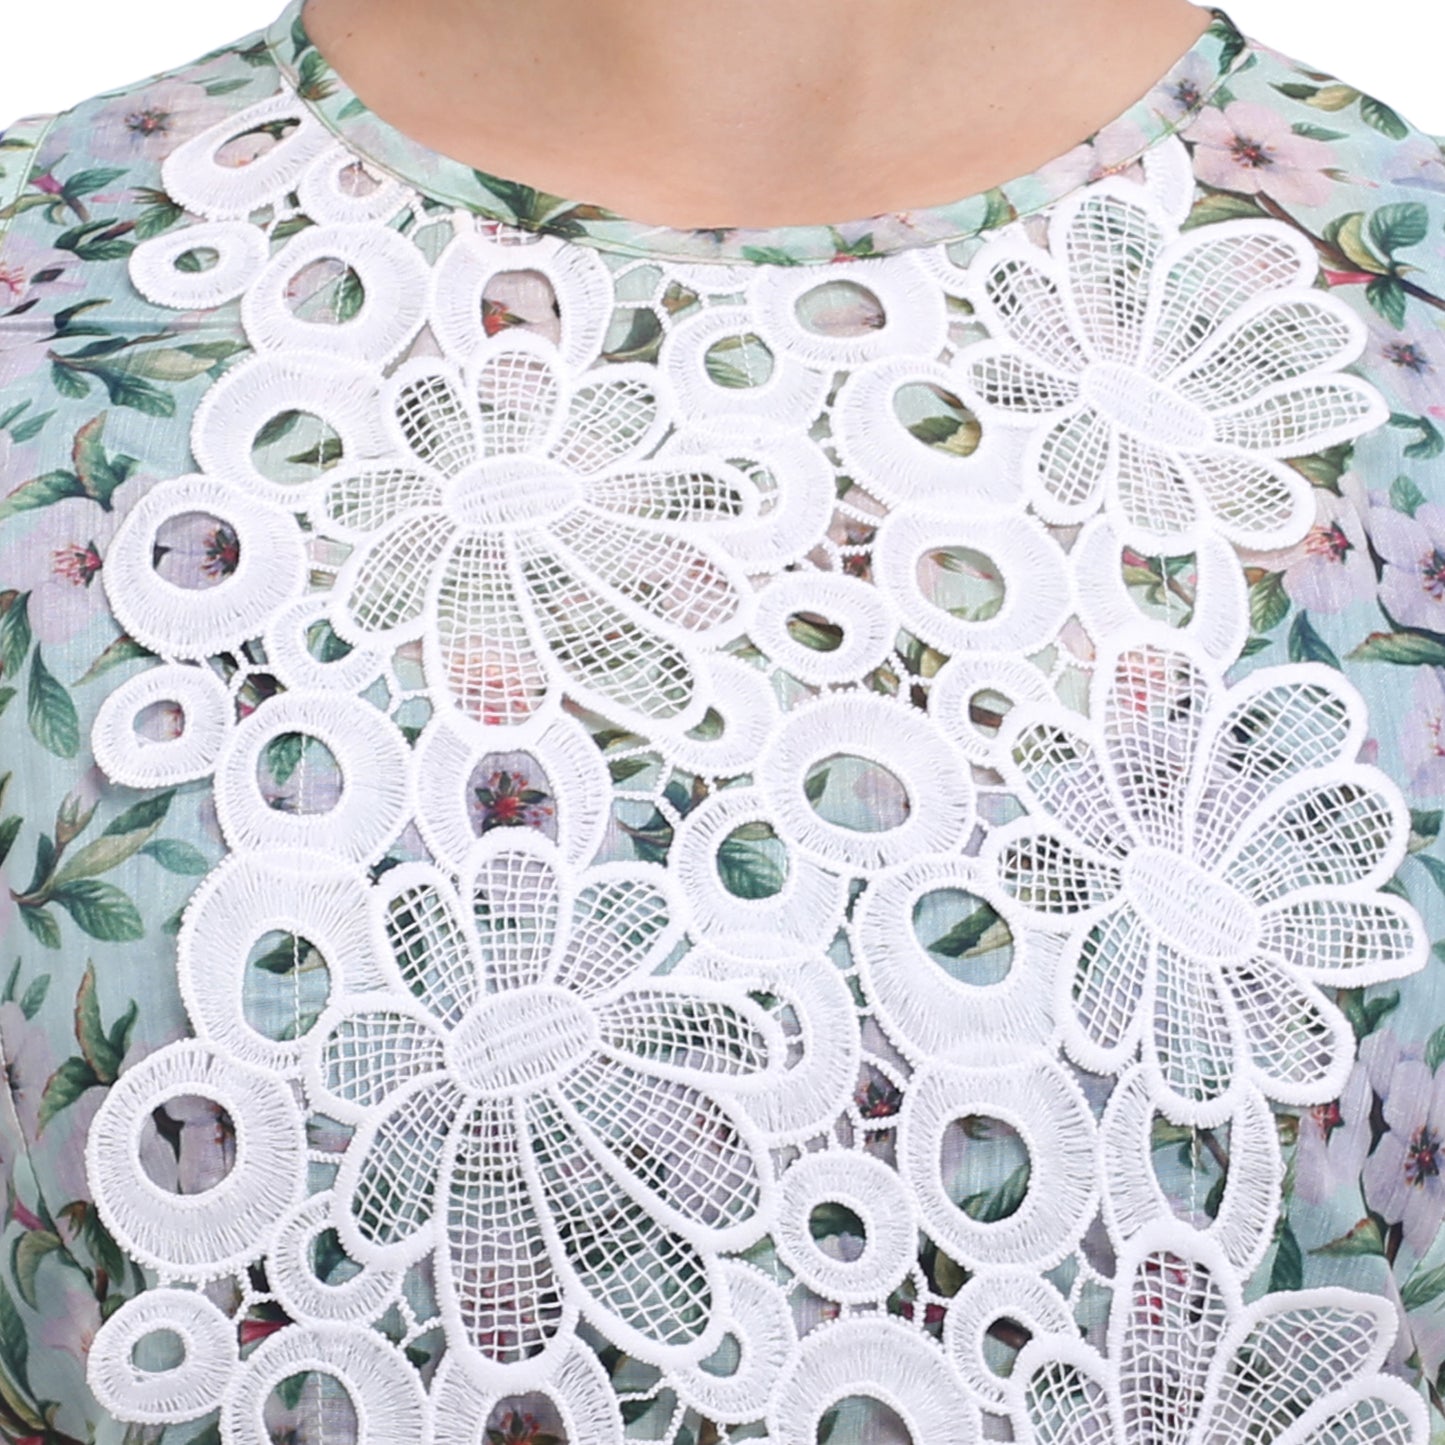 Aqua floral cotton dress with lace detail